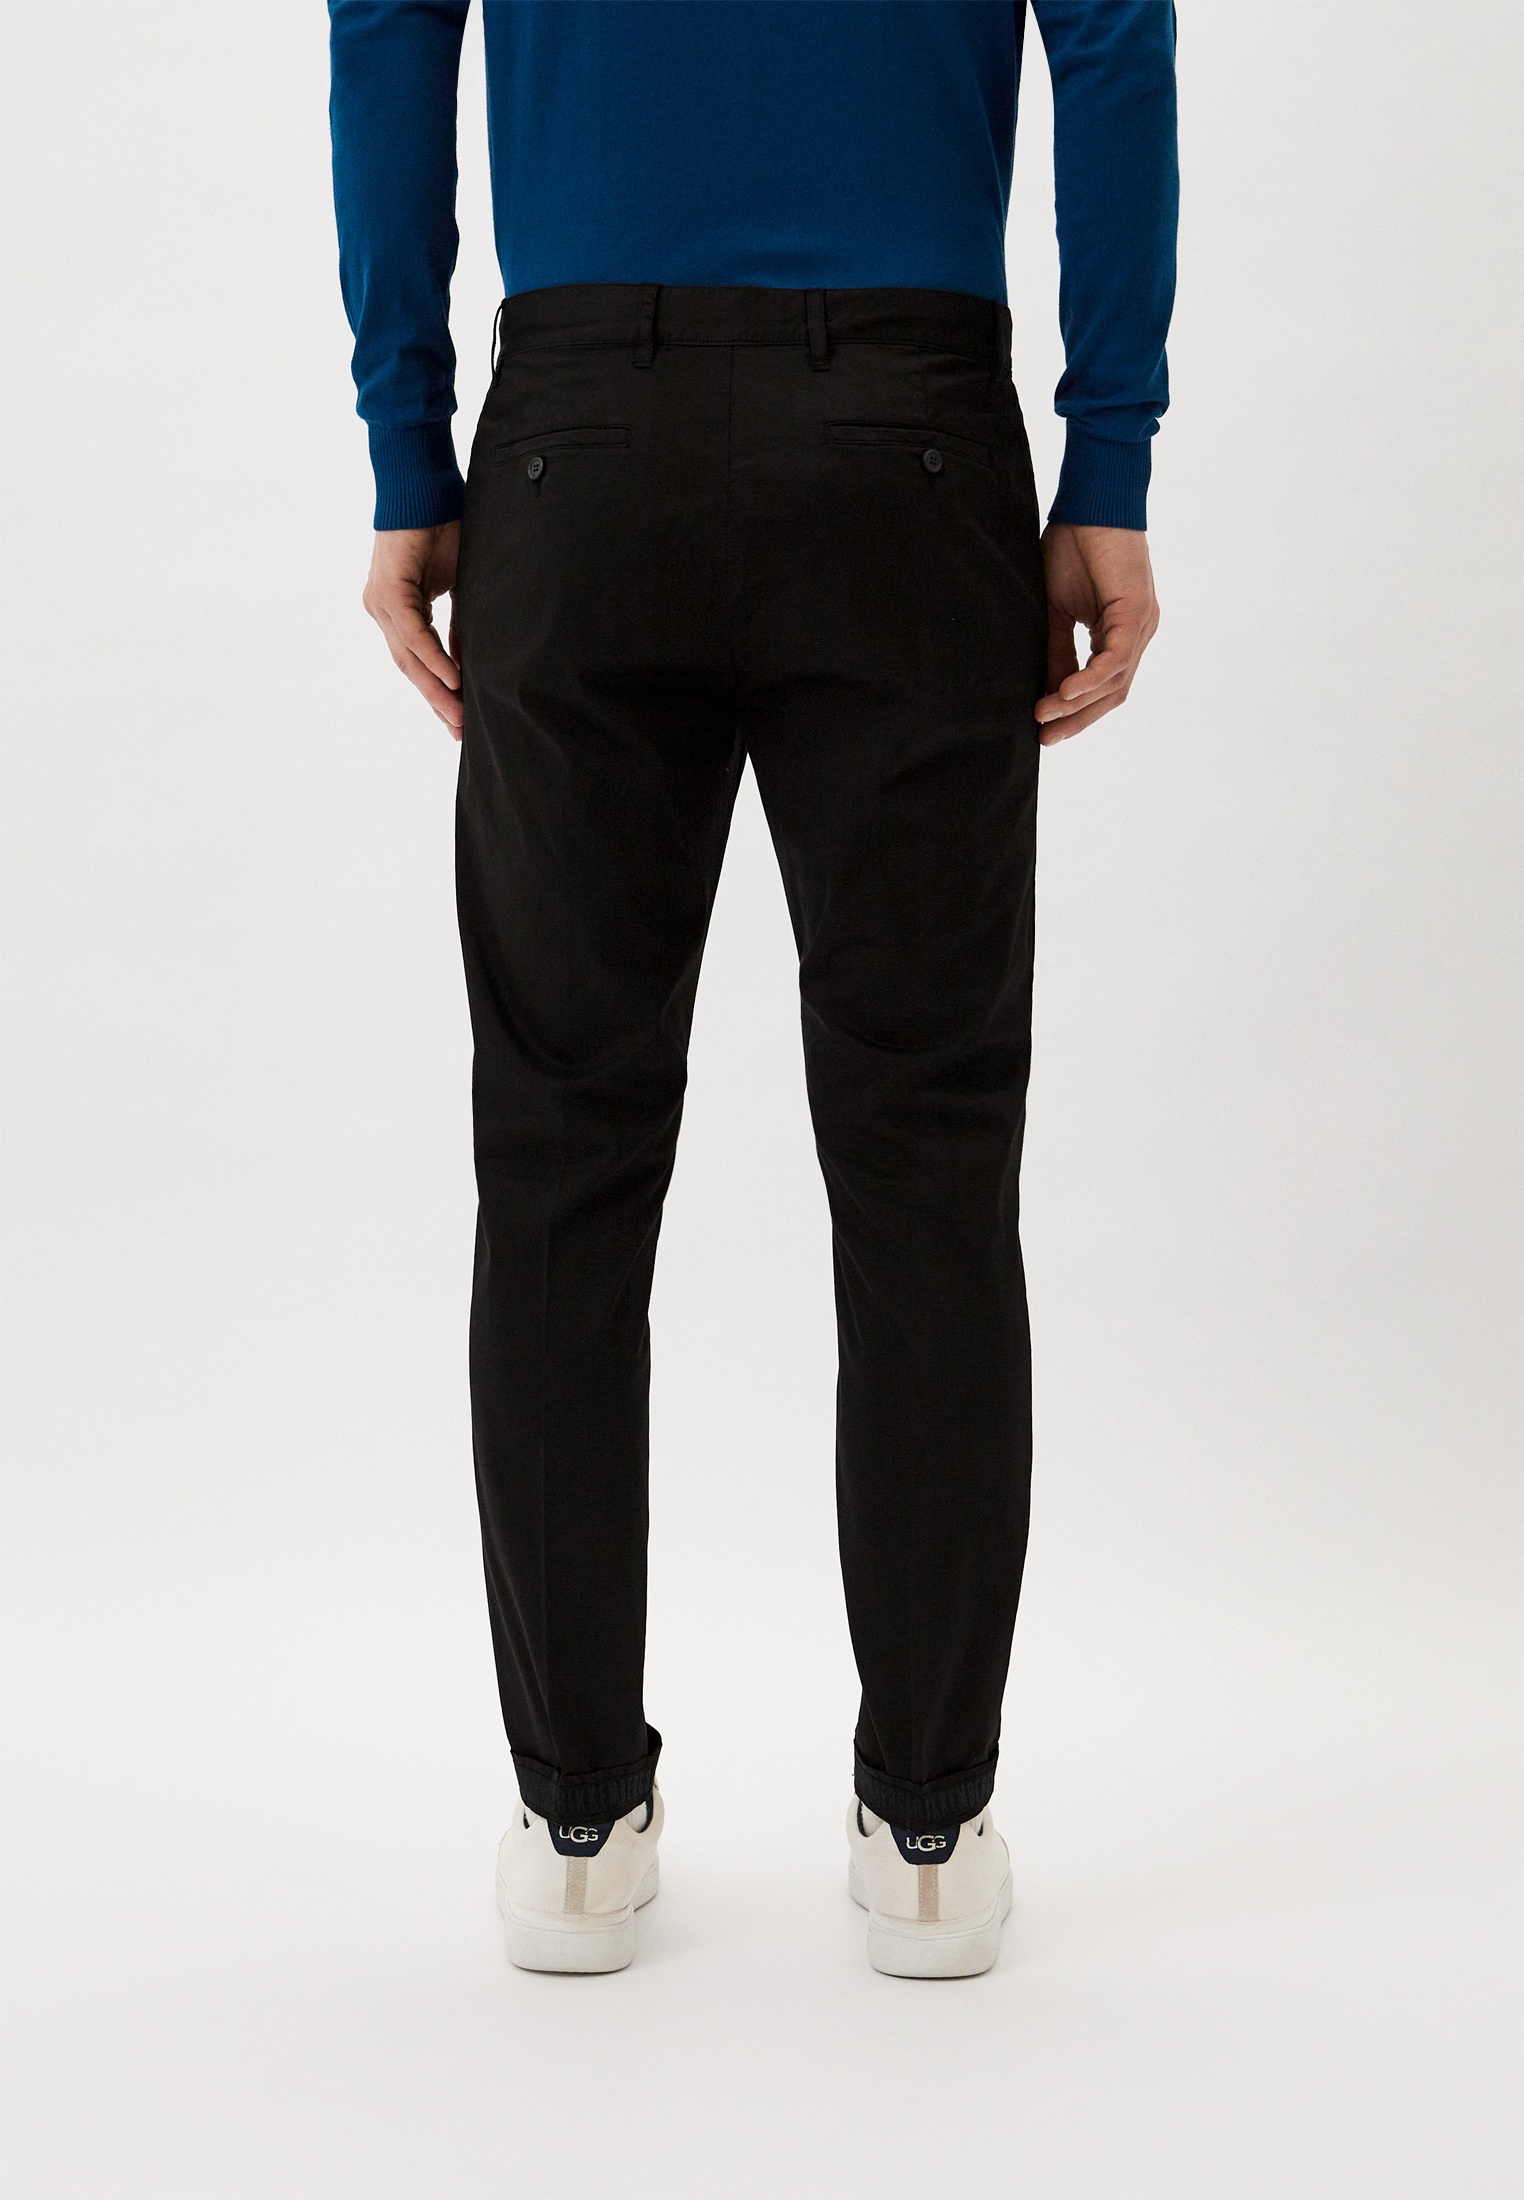 Мужские повседневные брюки Bikkembergs (Биккембергс) CP00107S3519: изображение 7